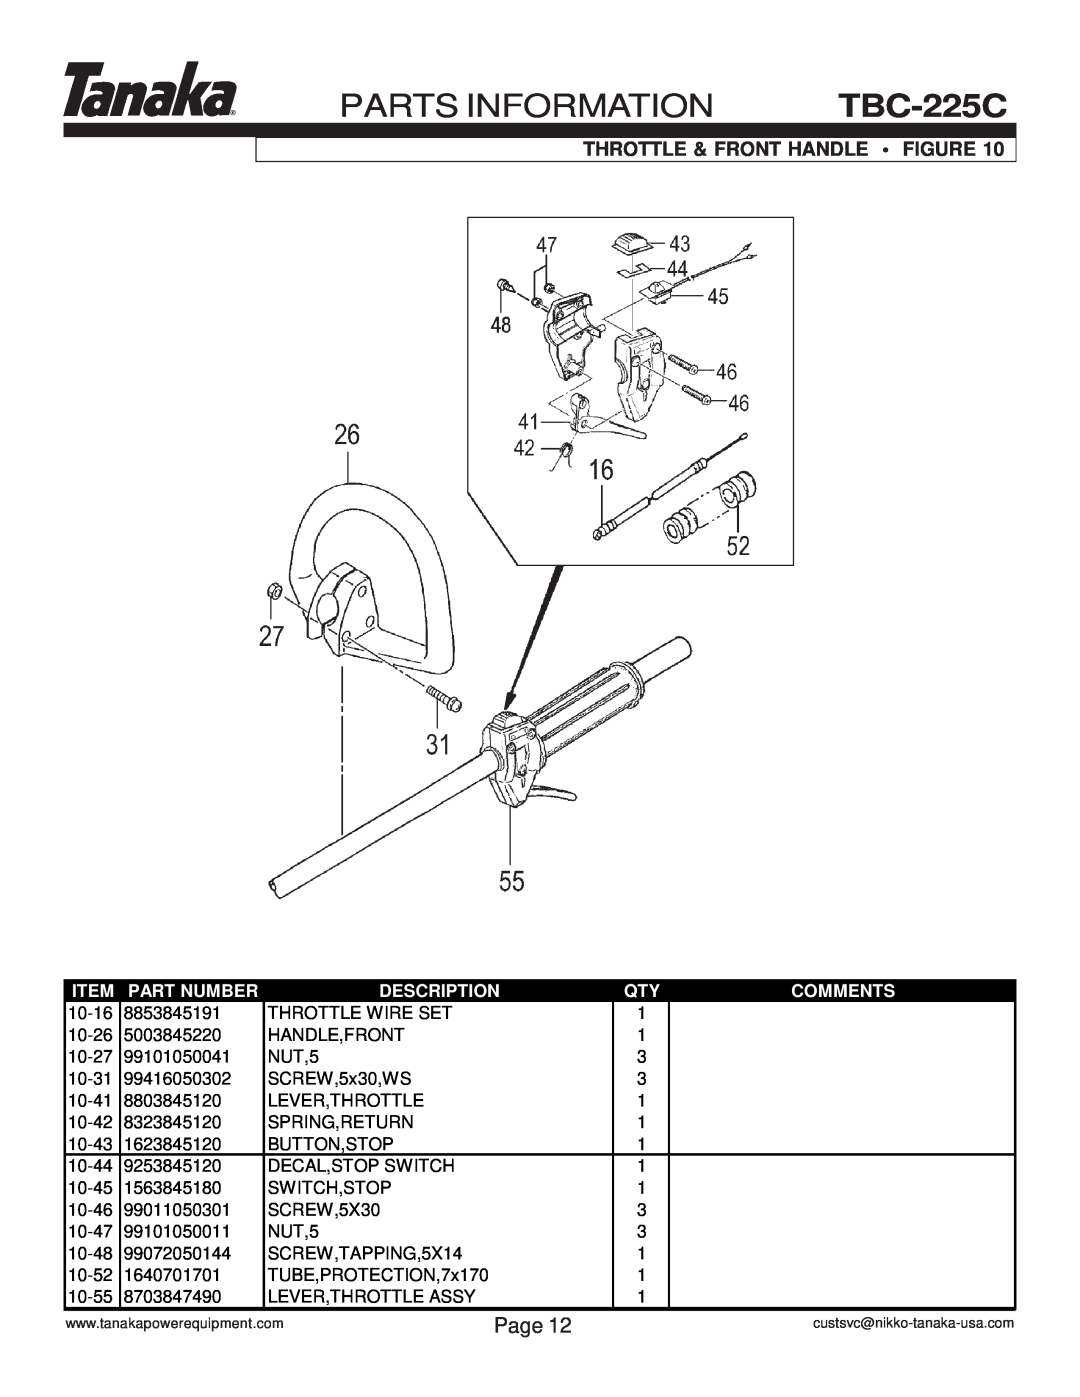 Tanaka manual PARTS INFORMATION TBC-225C, Throttle & Front Handle Figure, Page, Part Number, Description, Comments 